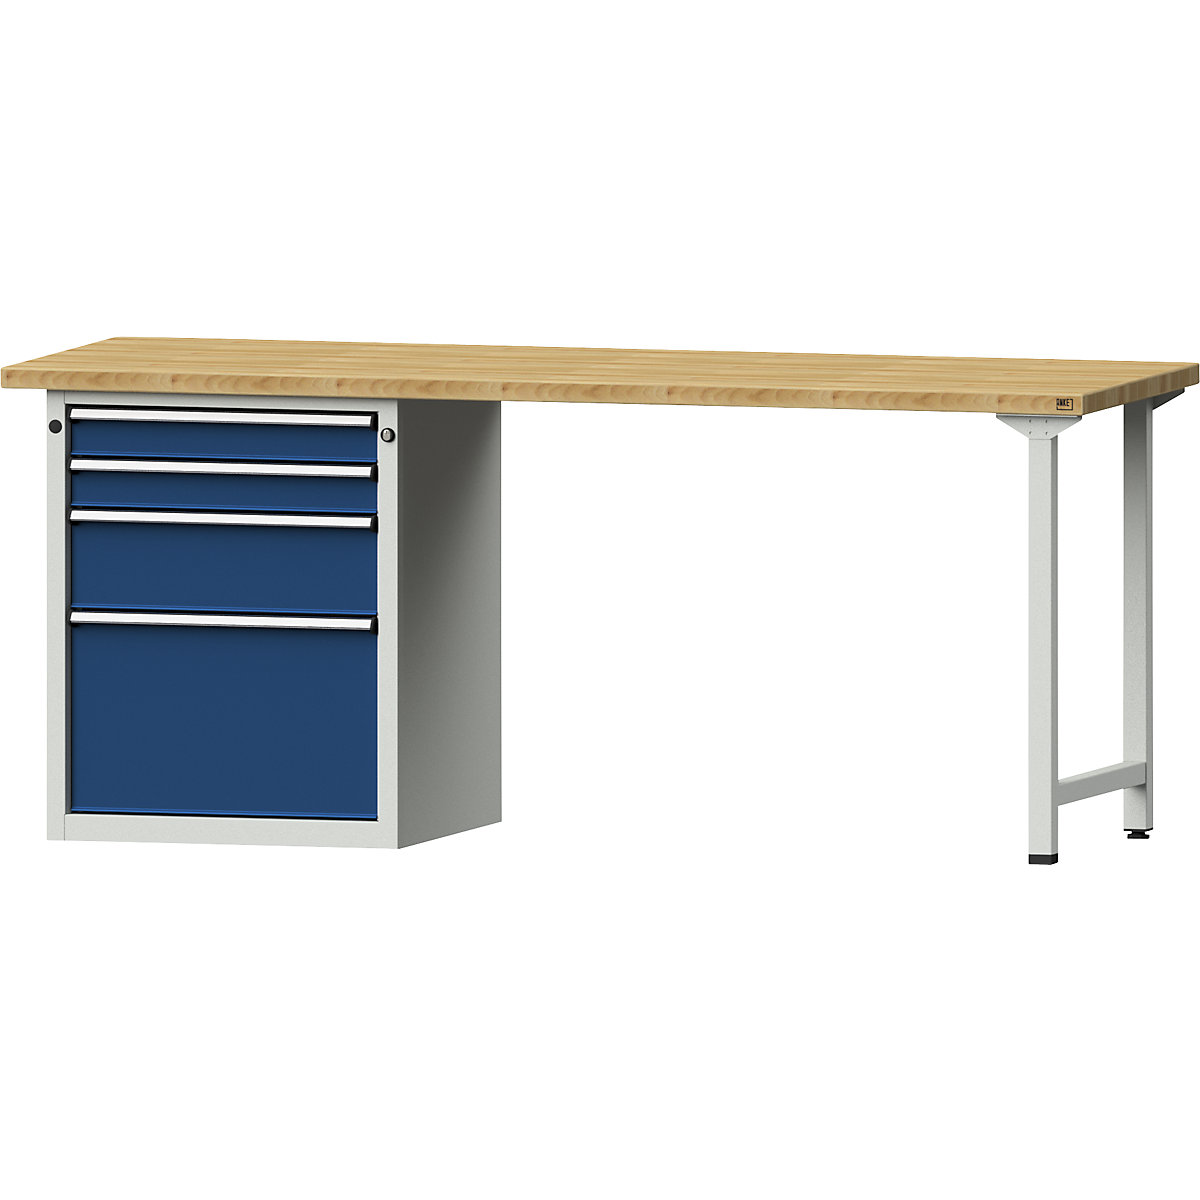 Dílenský stůl s rámovou konstrukcí – ANKE, 4 zásuvky, 2 x 90, 1 x 180, 1 x 360 mm, deska z bukového masivu, šířka 2000 mm-7